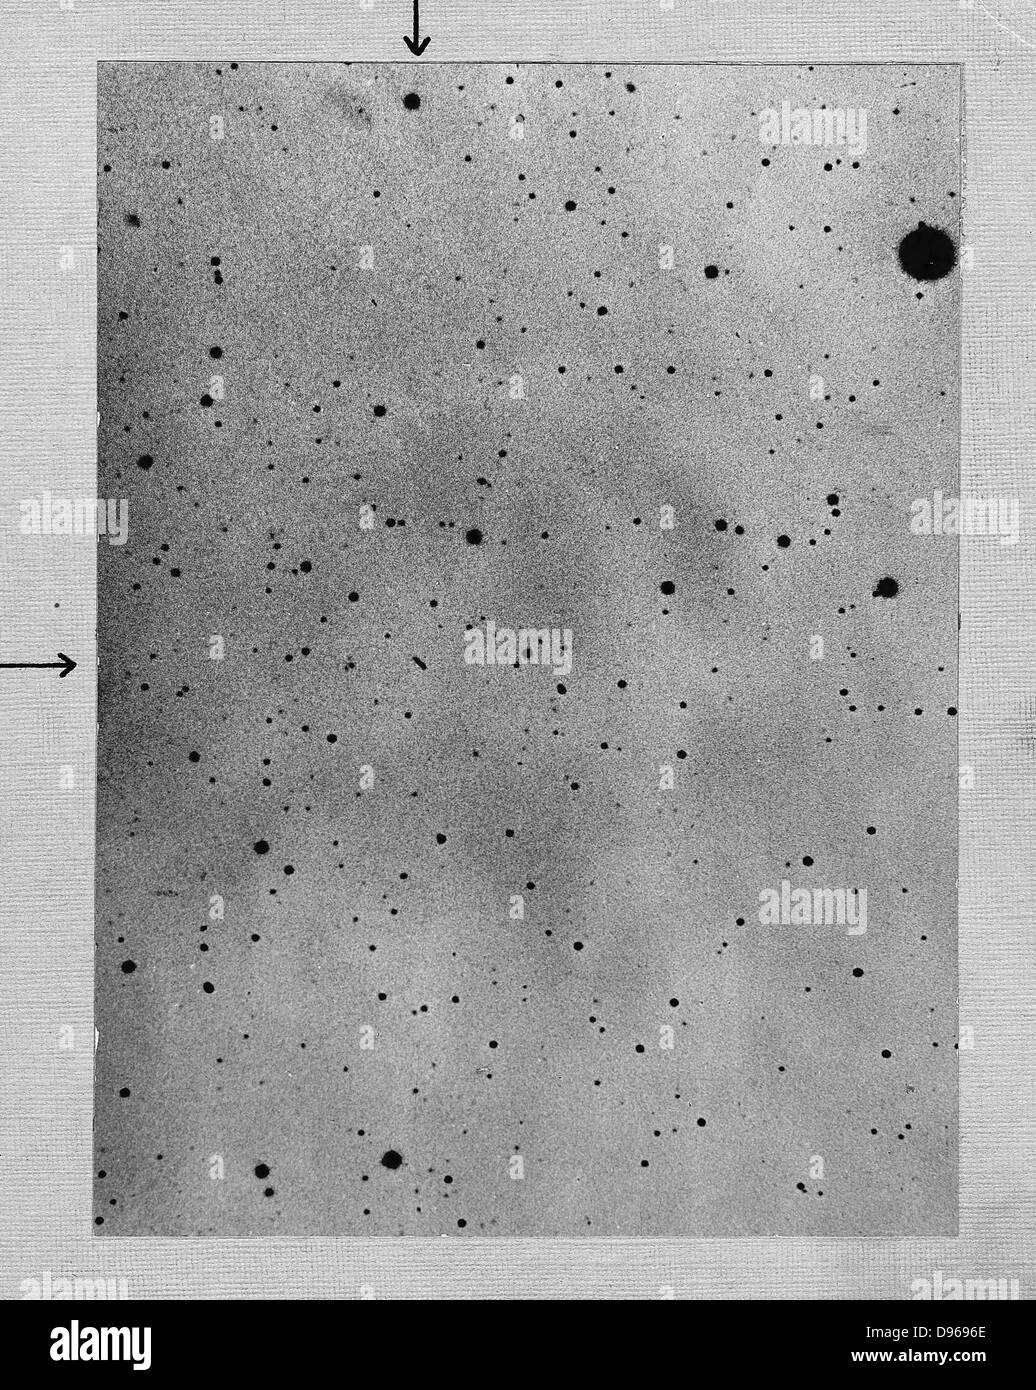 Una lunga esposizione delle stelle di campo che mostra la via dell'asteroide (planetoid) Sappho contro punti di stelle. Fotografia di Max lupo di Heidelberg il 21 marzo 1892. Non negativo convertito in positivo per evitare qualsiasi perdita di dettaglio. Foto Stock